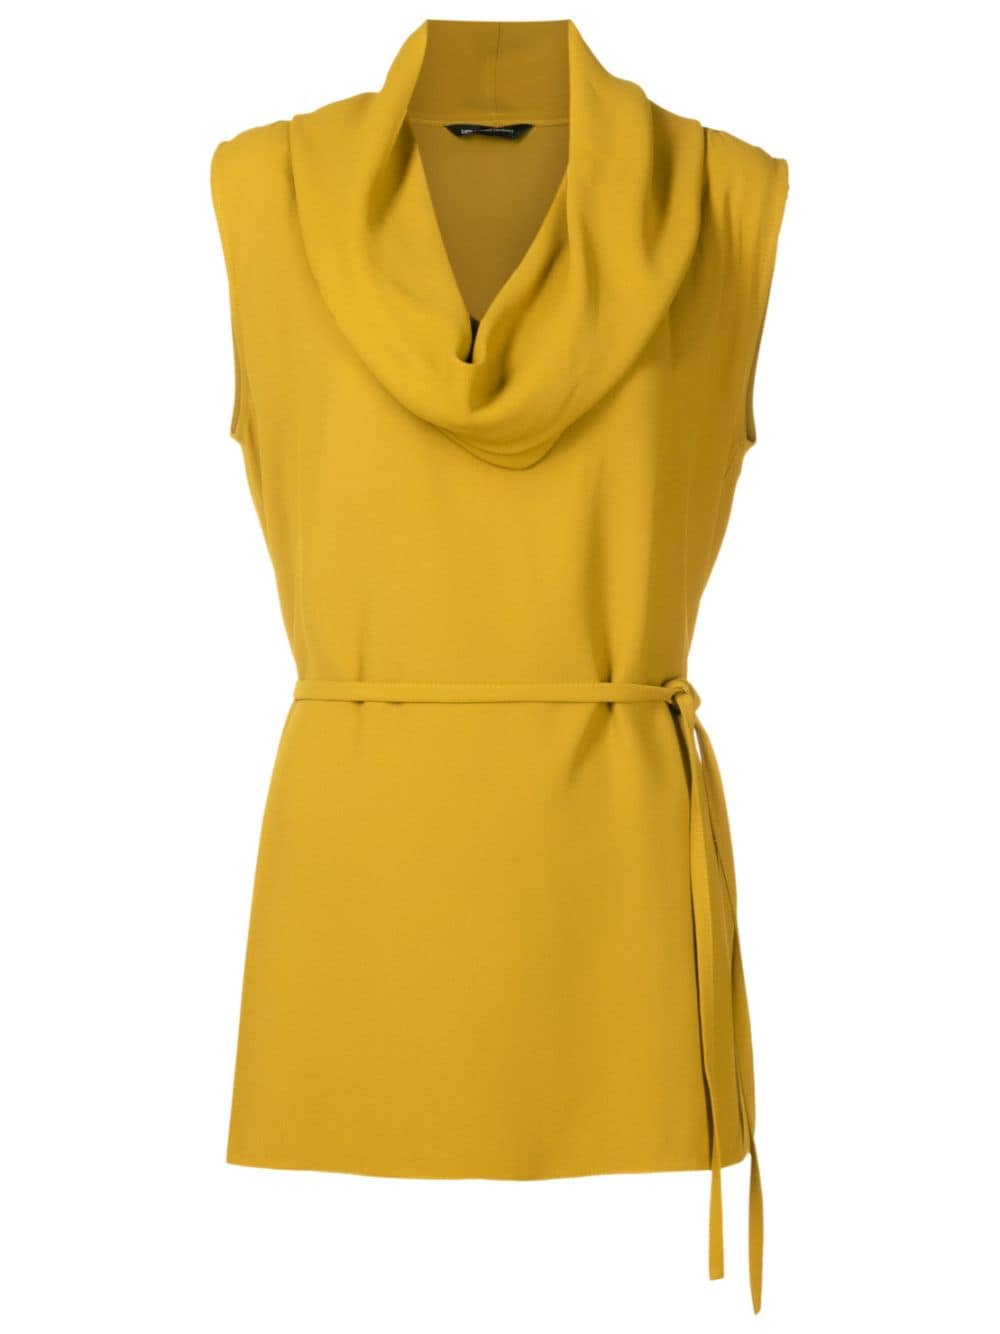 Uma | Raquel Davidowicz cowl-neck tied-waist blouse - Yellow von Uma | Raquel Davidowicz